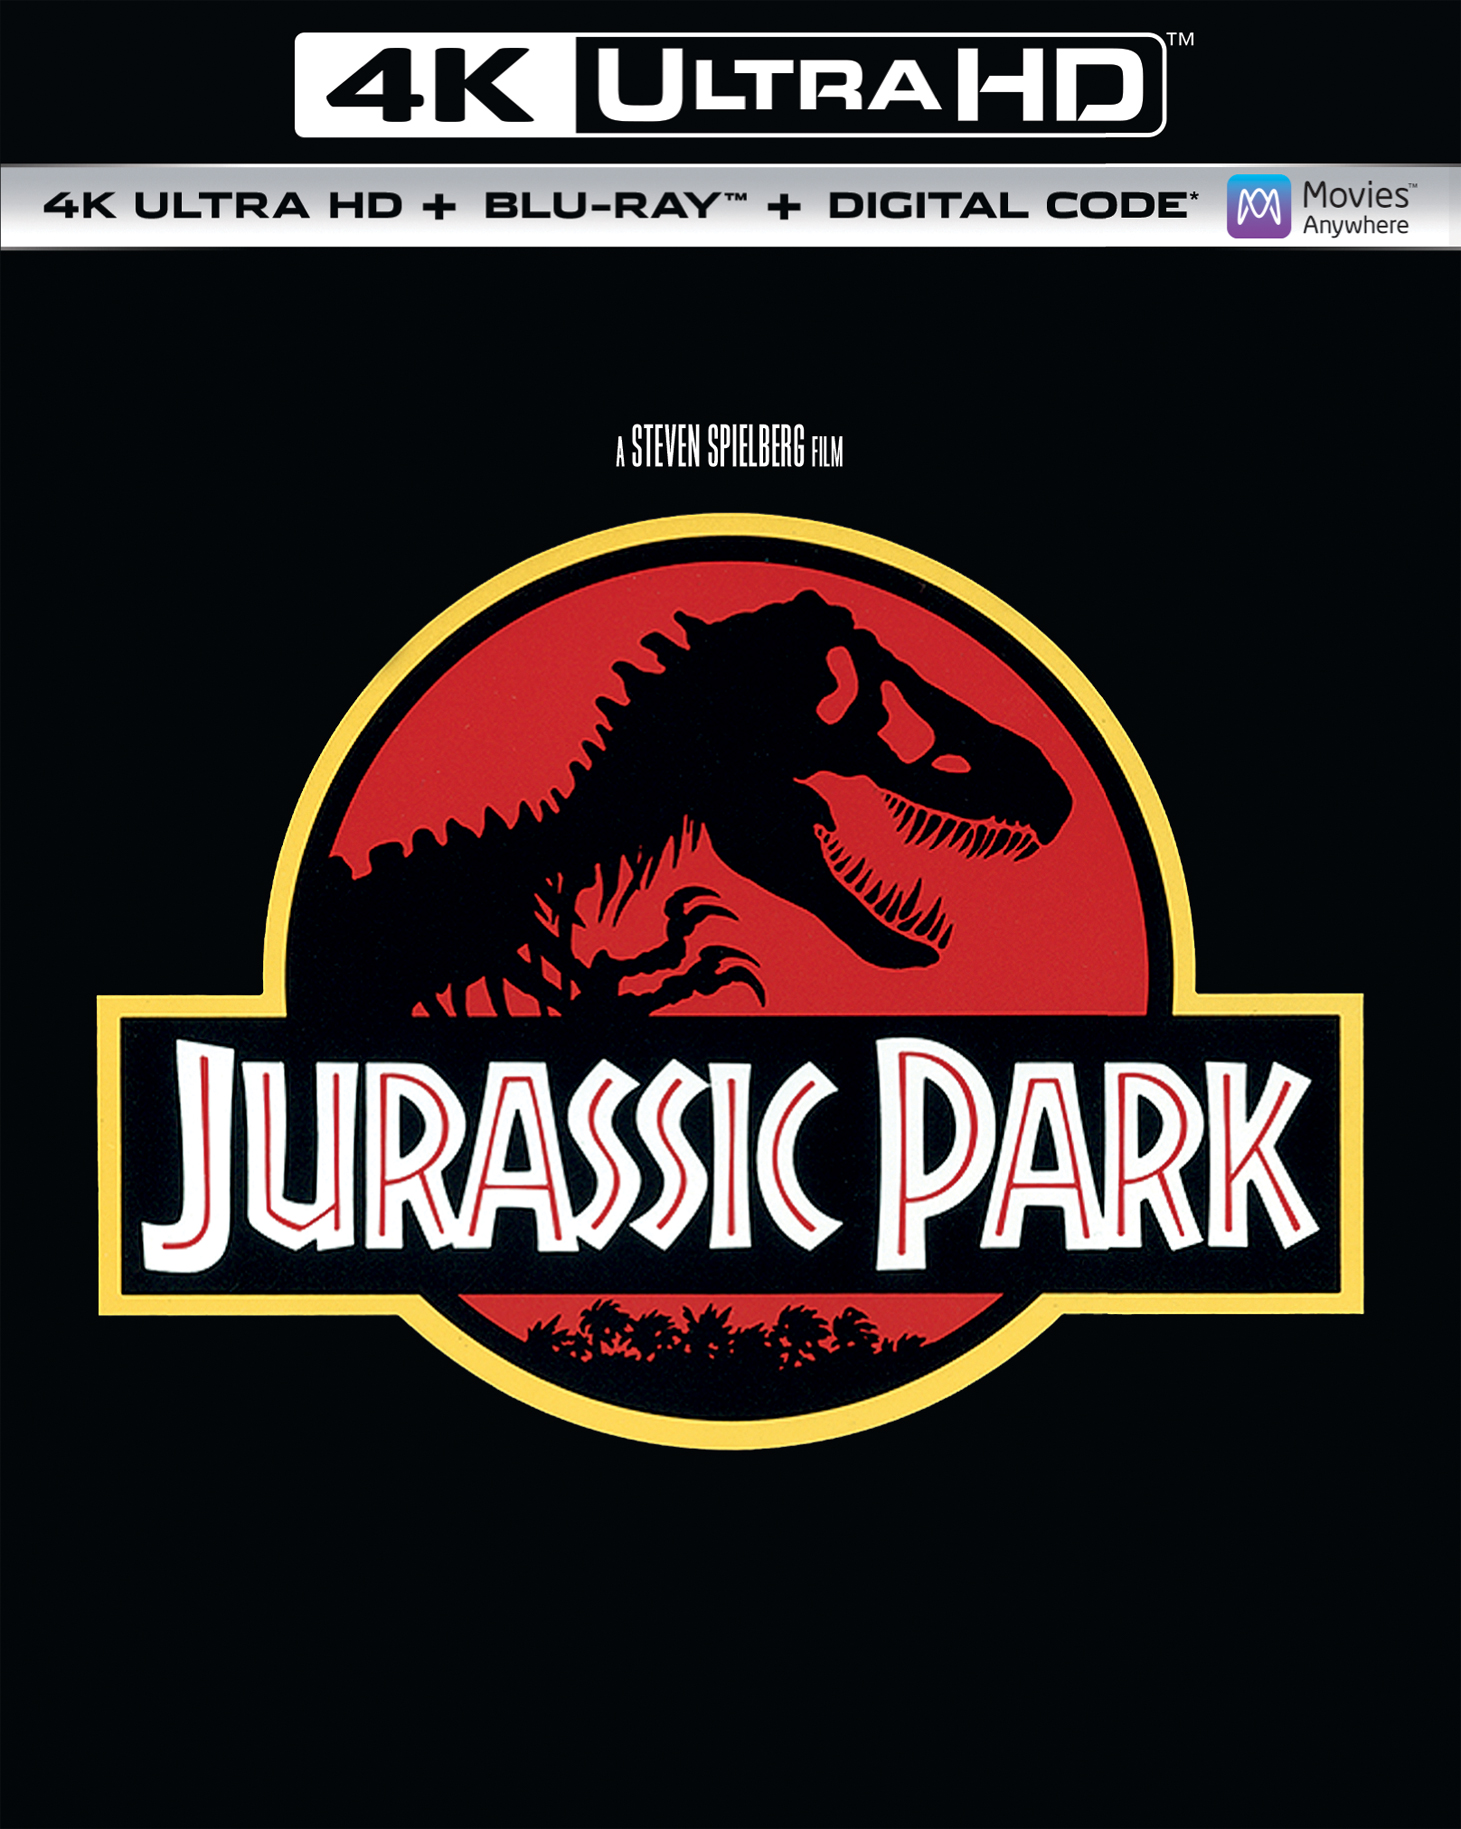 Best Buy: Jurassic World: Fallen Kingdom [4K Ultra HD Blu-ray] [2018]